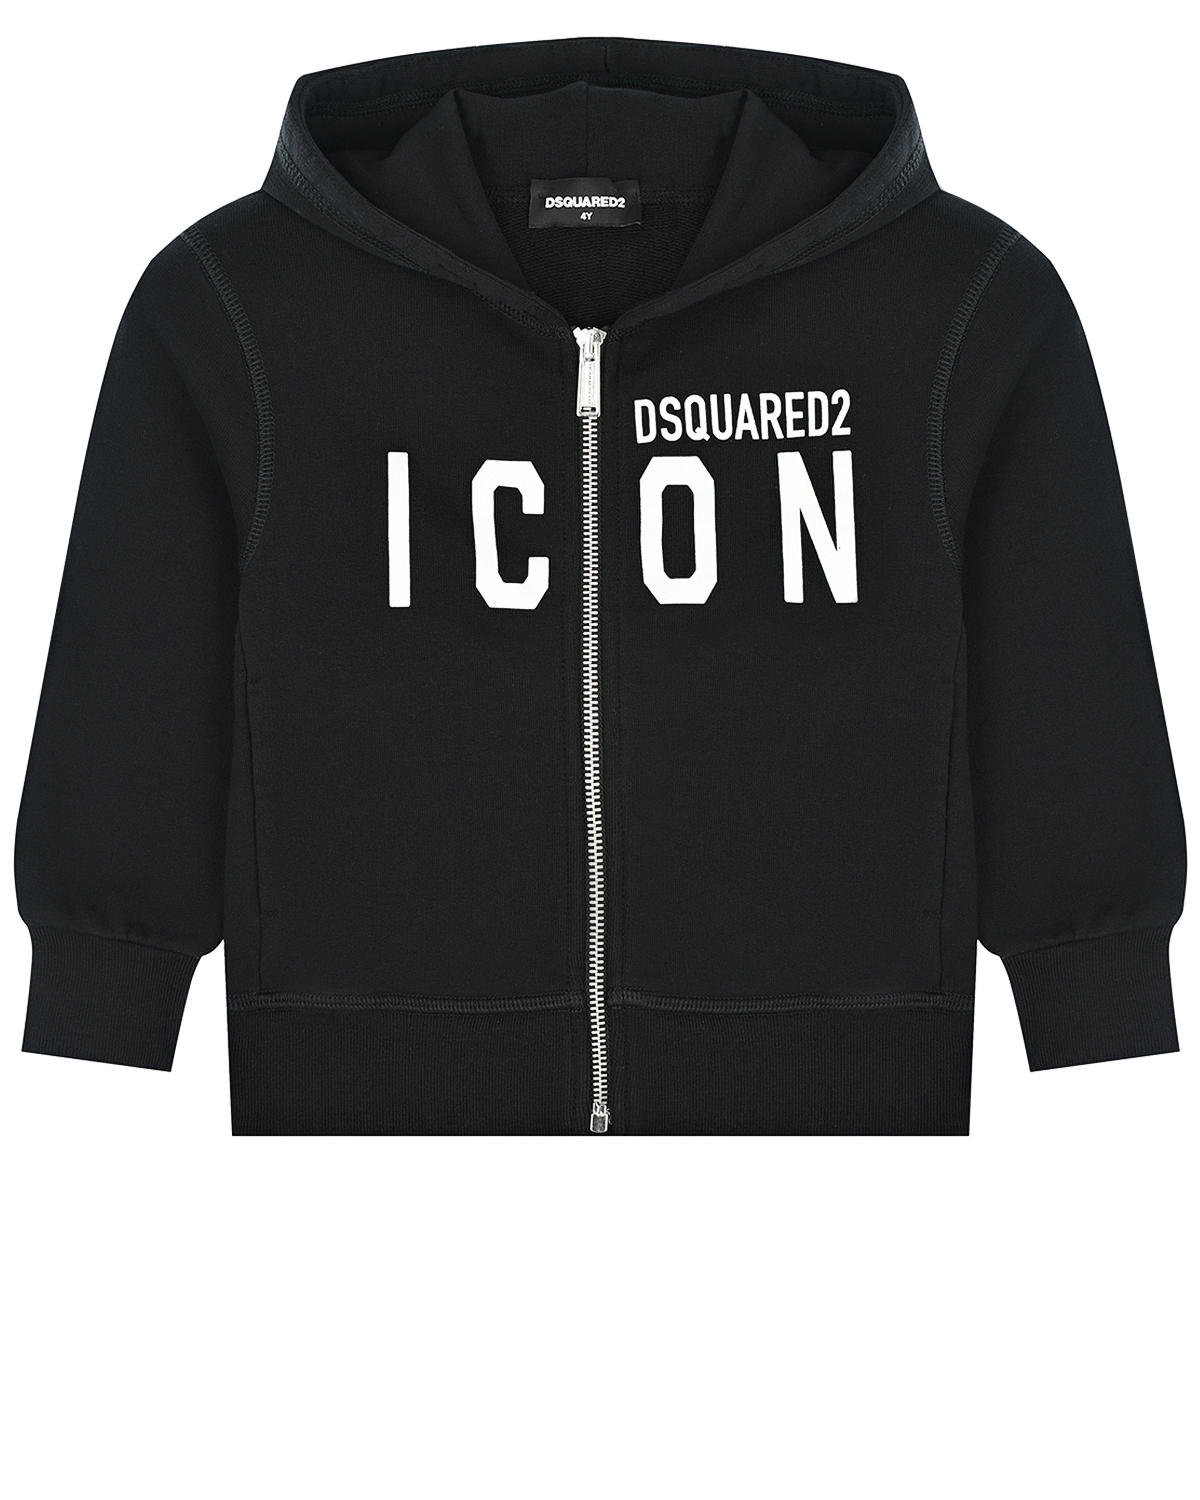 Черная спортивная куртка с принтом "ICON" Dsquared2 детская, размер 104, цвет черный